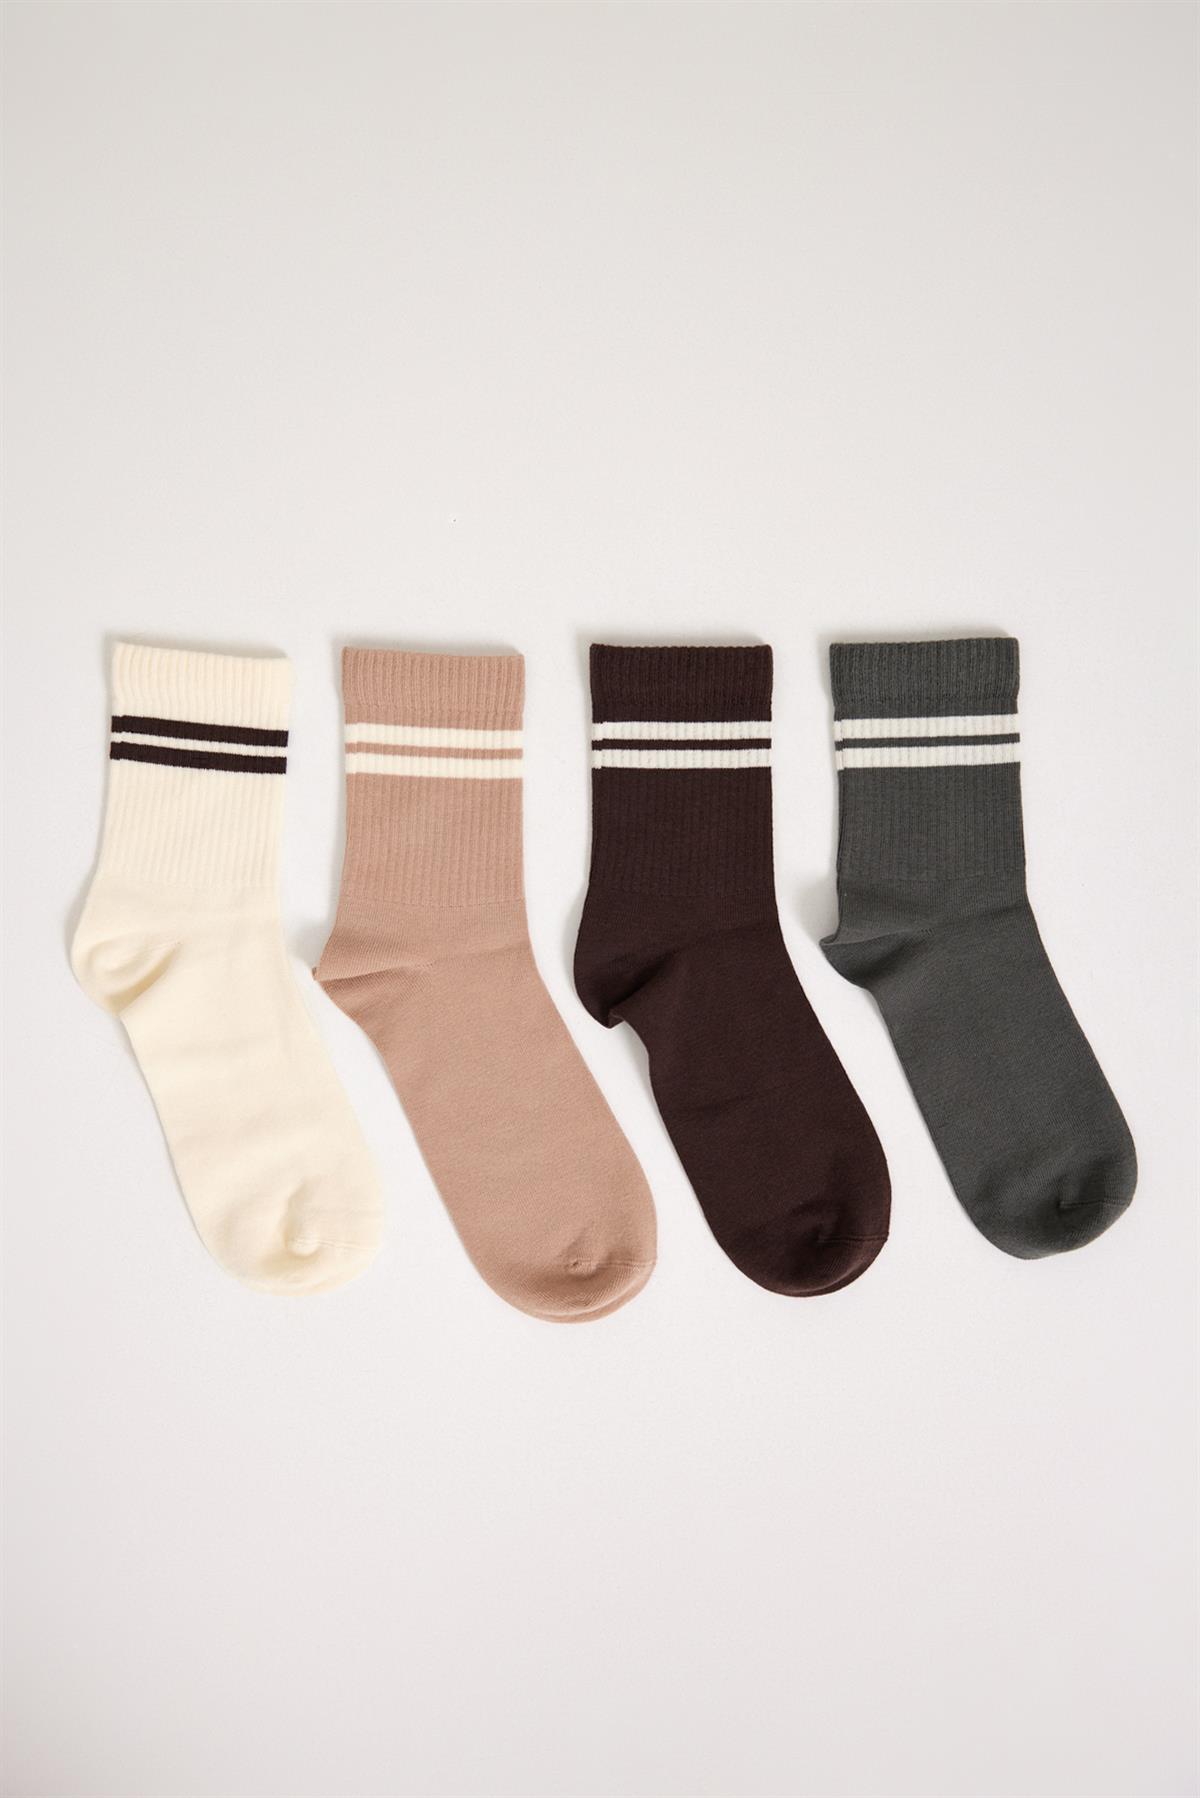 4'lü Paket Şeritli Erkek Spor Soket Çorap